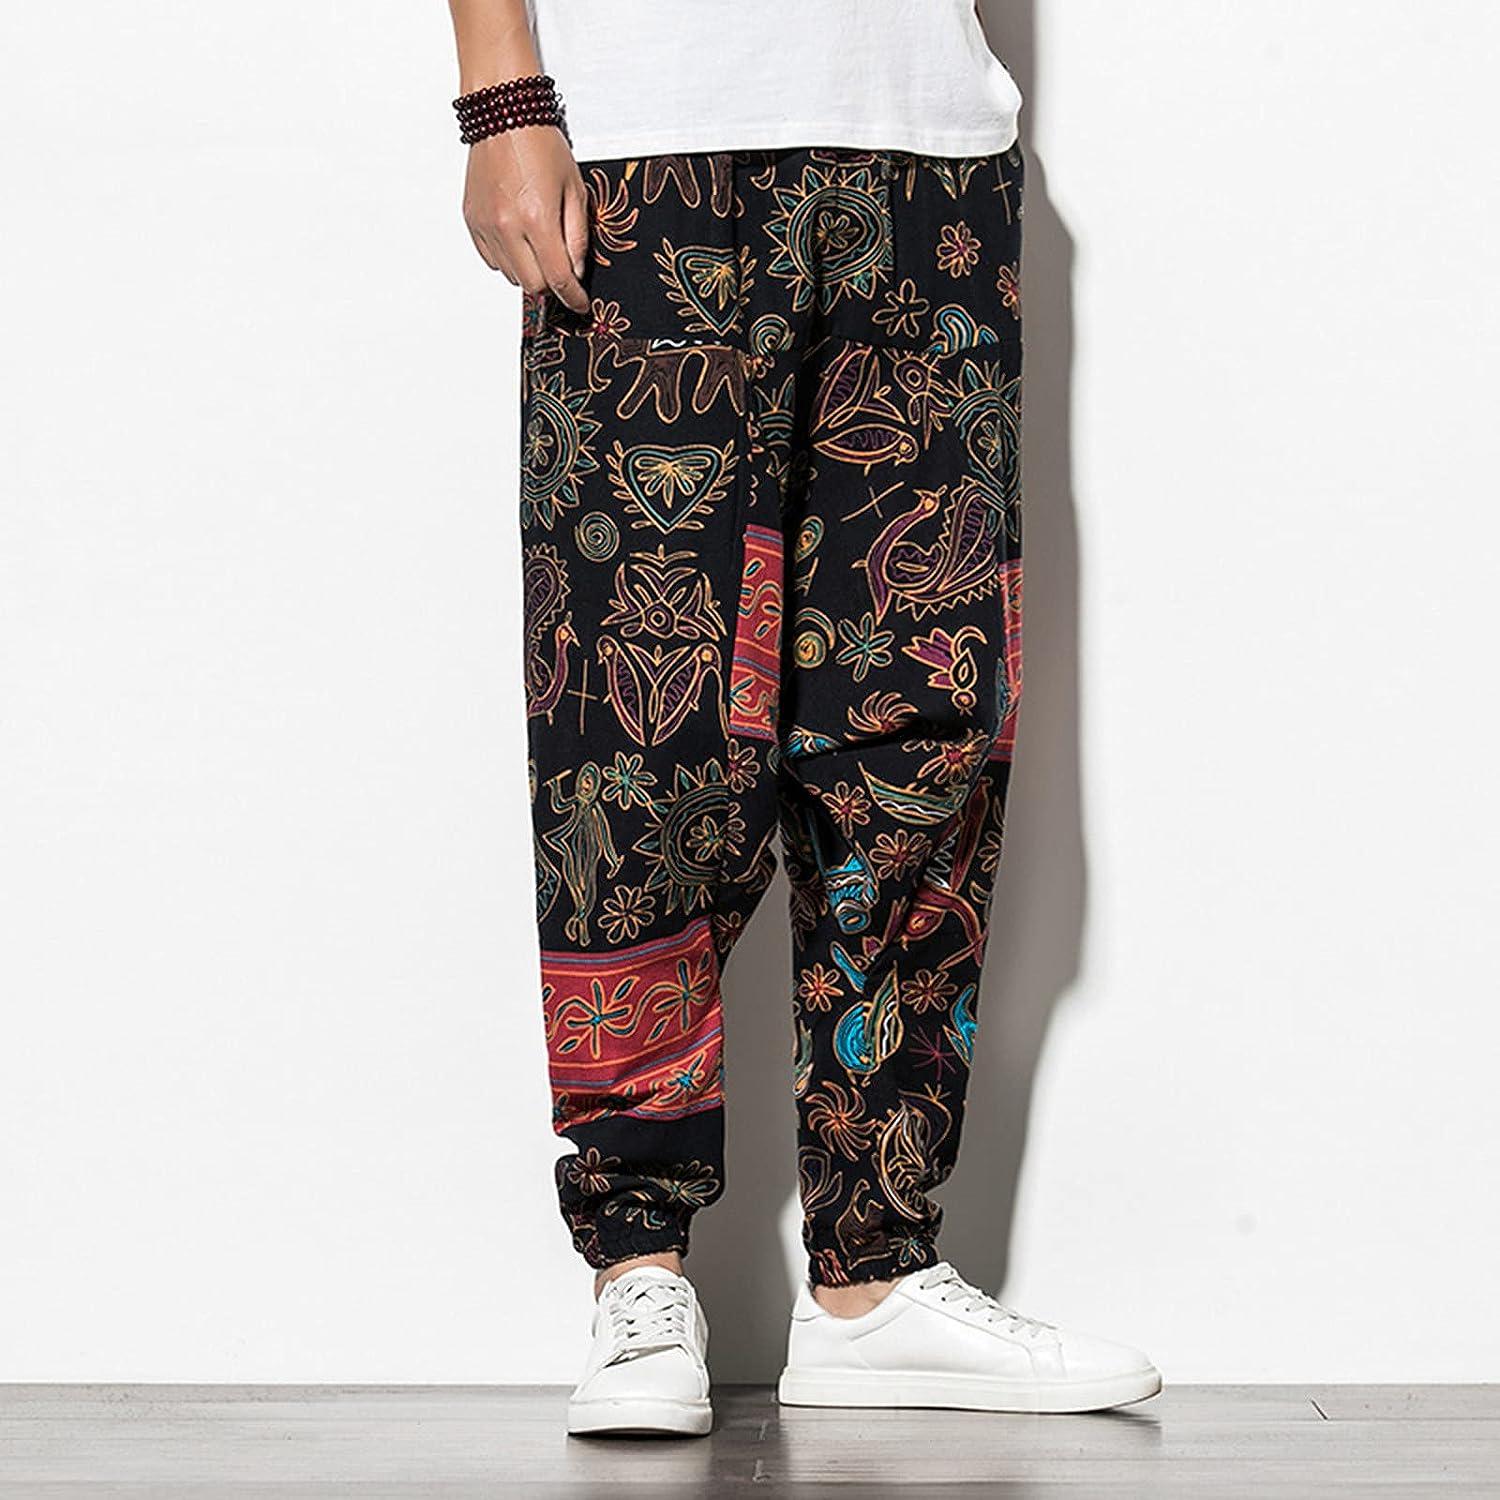 Men's Cotton Linen Harem Yoga Pants Casual Baggy Hippie Boho Print  Sweatpants Lightweight Drop Crotch Trousers Black 3X-Large